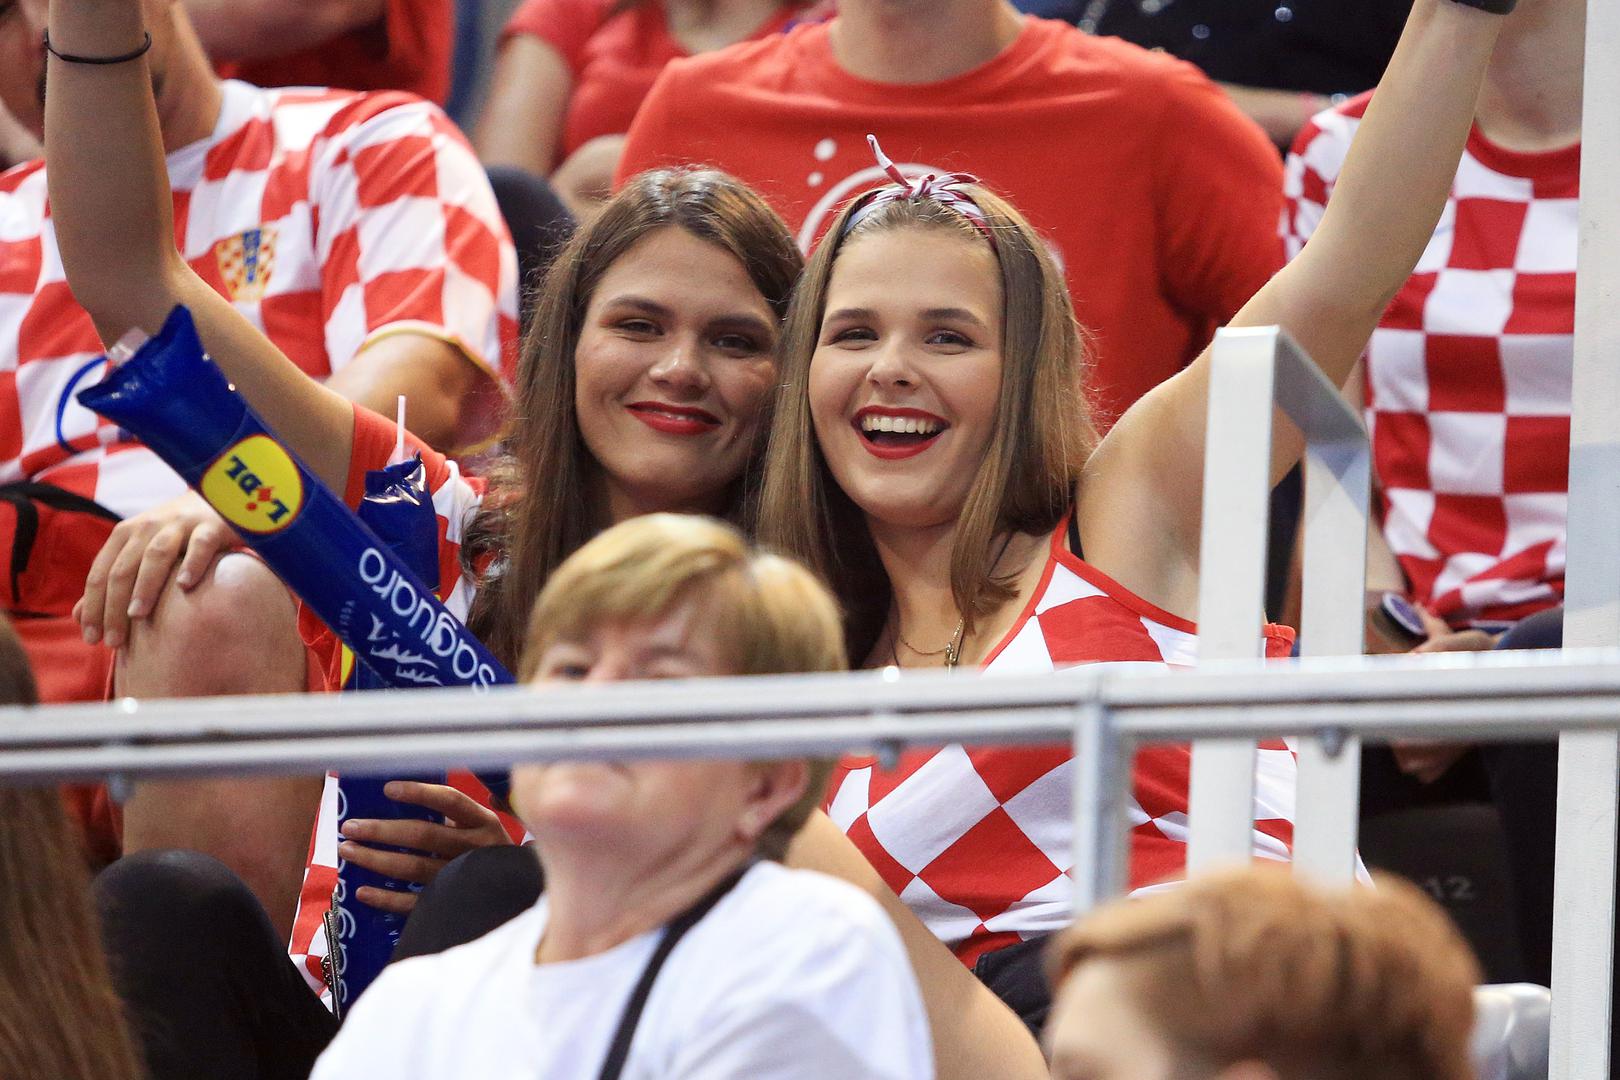 Hrvatska rukometna reprezentacija napravila je veliki korak prema Svjetskom prvenstvu pobjedom 32:19 protiv Crne Gore.

